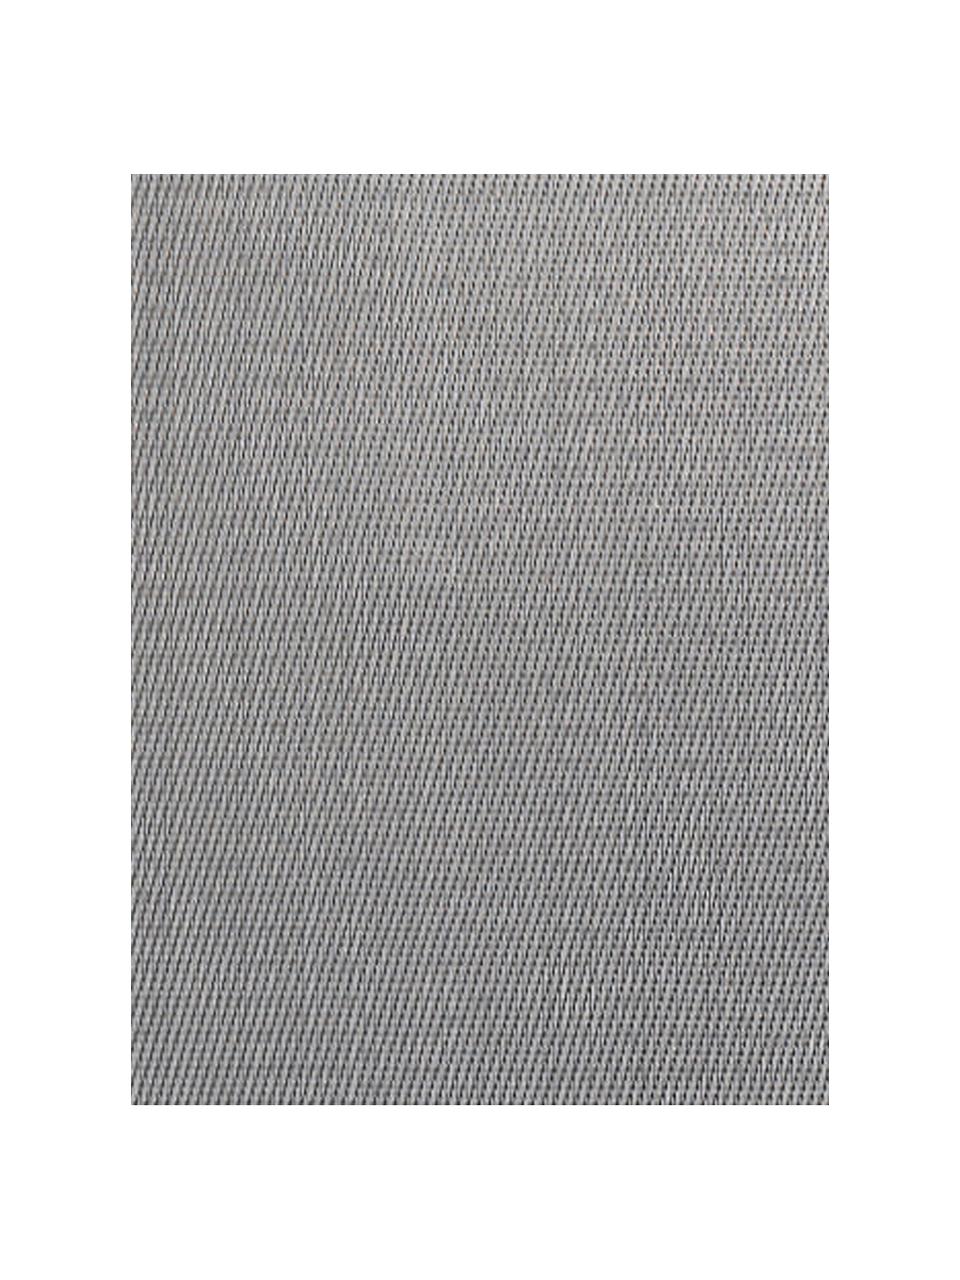 Tovaglietta americana in materiale sintetico Trefl 2 pz, Materiale sintetico (PVC), Tonalità grigie, Larg. 33 x Lung. 46 cm